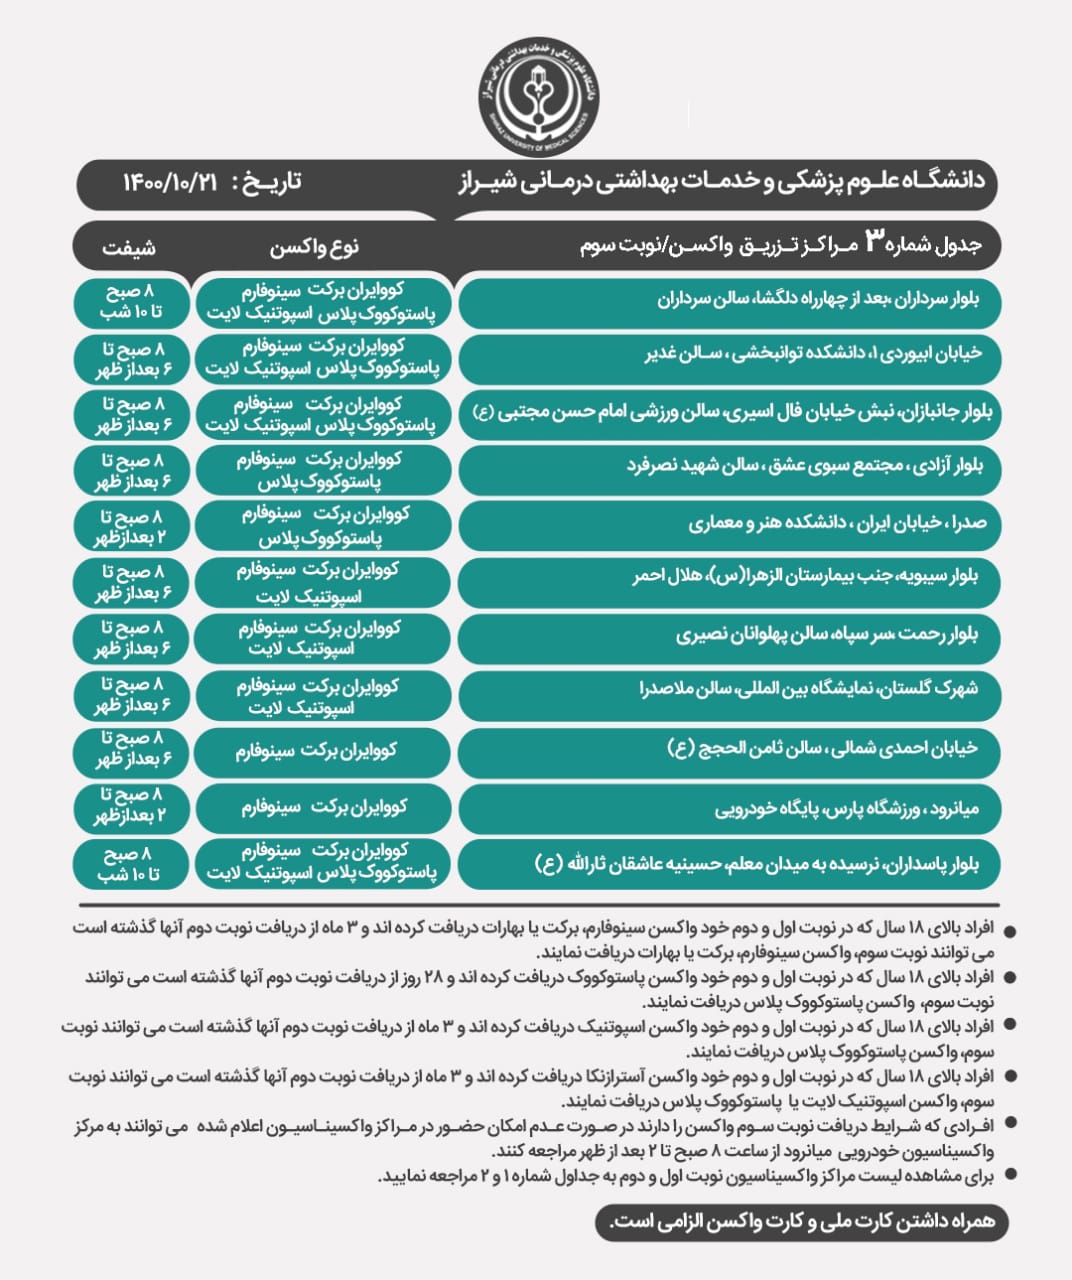 اعلام مراکز واکسیناسیون کرونا در شیراز؛ بیست و یکم دی